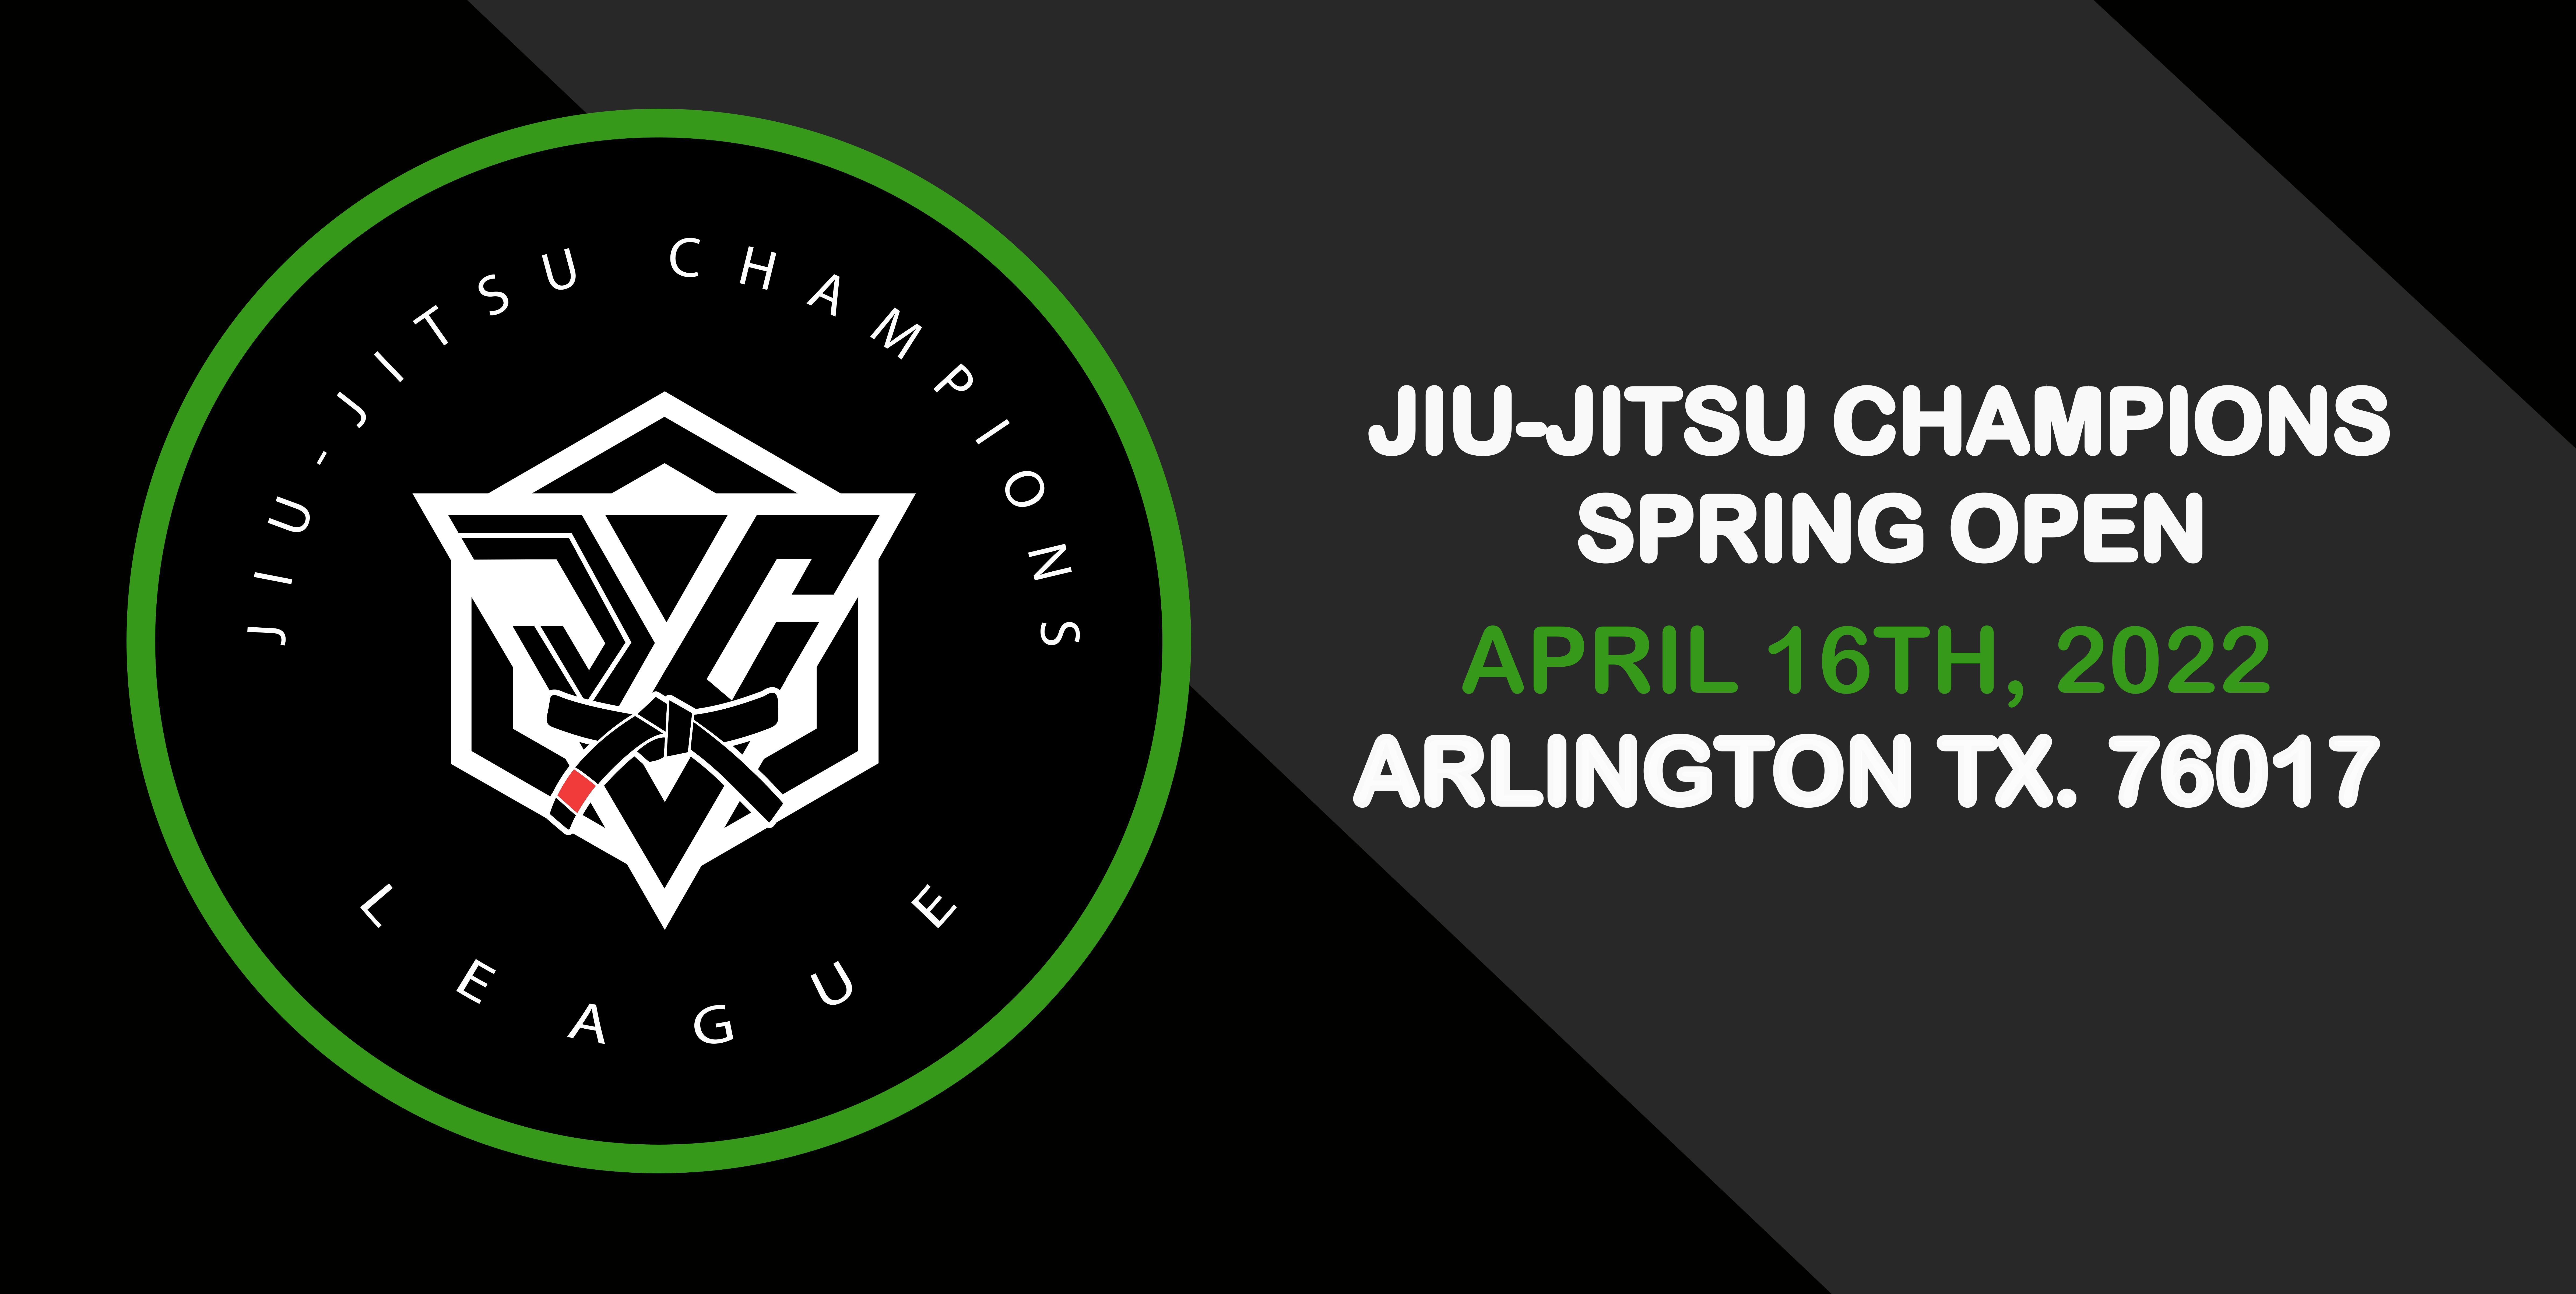 jiu-jitsu champions spring open